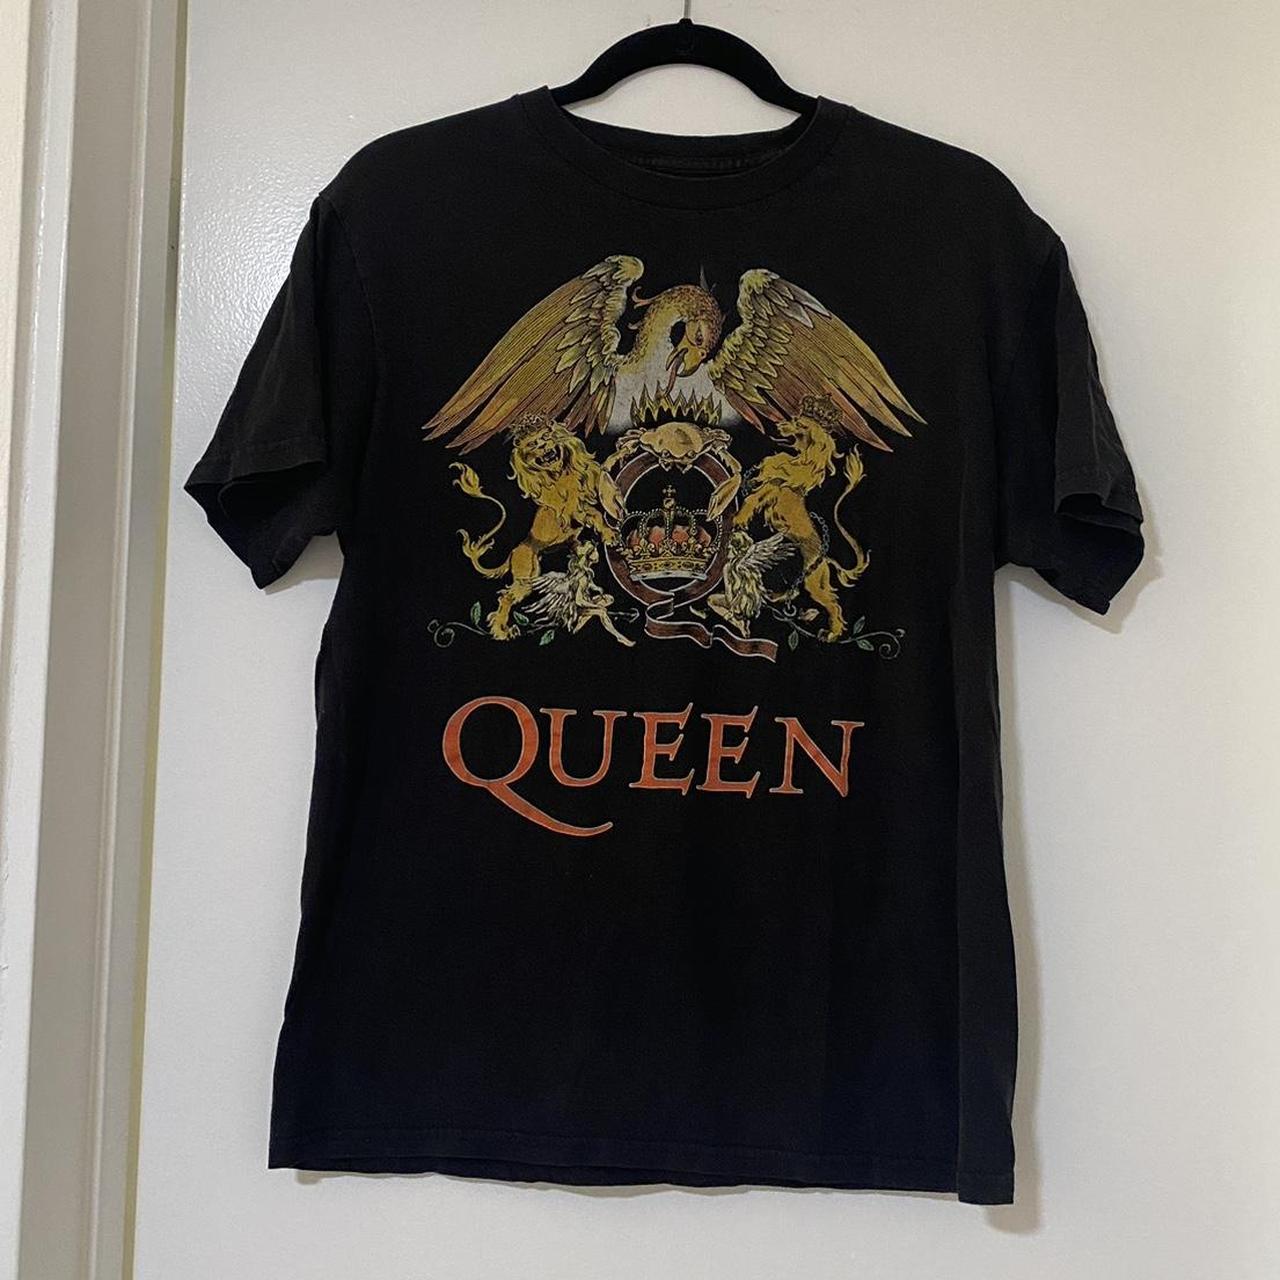 Queen band t-shirt Size S #queen #rockandroll... - Depop